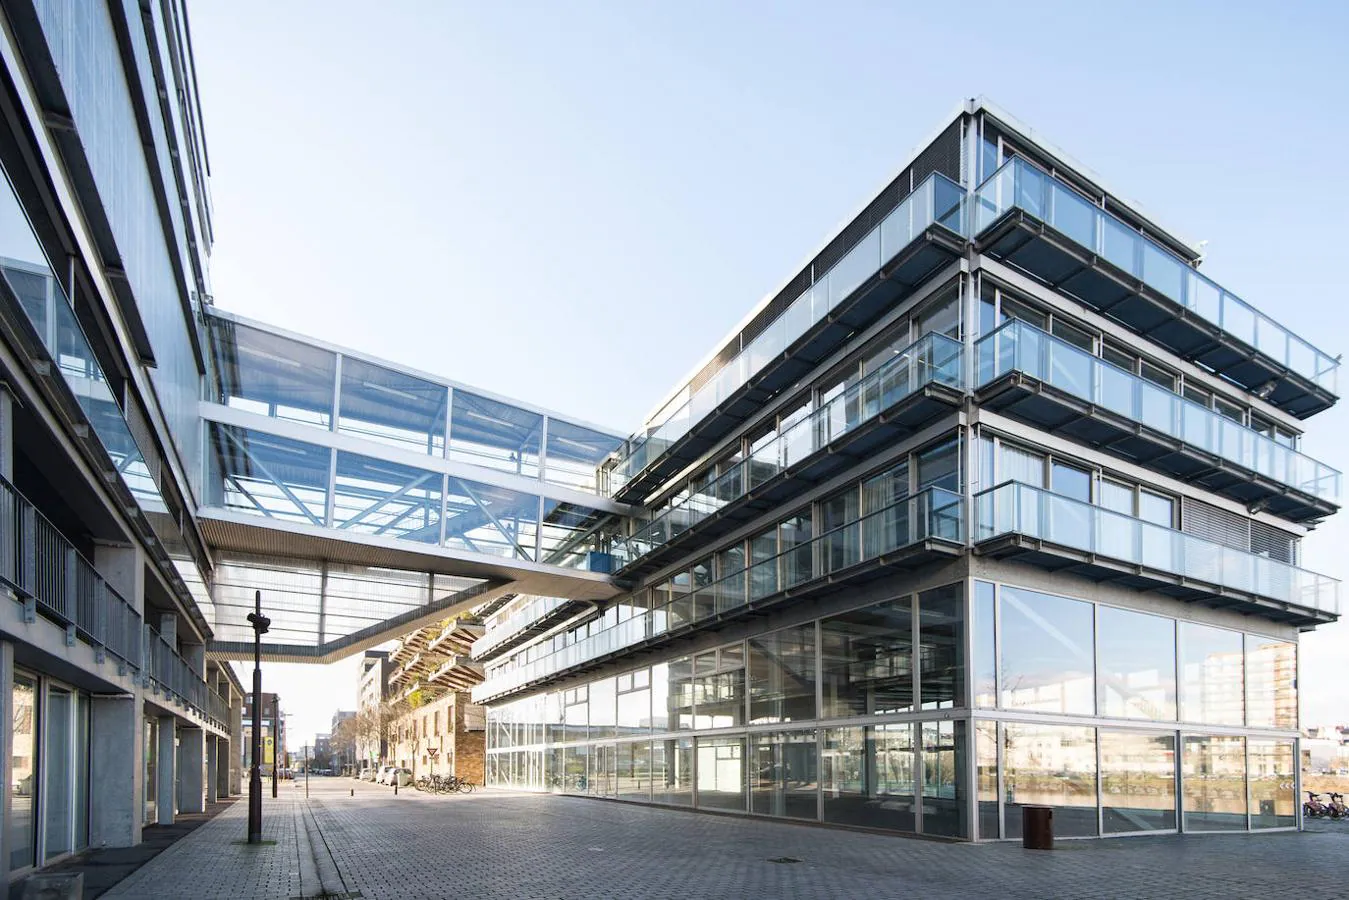 Escuela de arquitectura de Nantes (2009). Un proyecto de gran envergadura, con tres cubiertas a nueve, dieciséis y veintidós metros de altura sobre el nivel del suelo que se conectan por una rampa externa, que establece superficies a diferentes niveles de forma progresiva